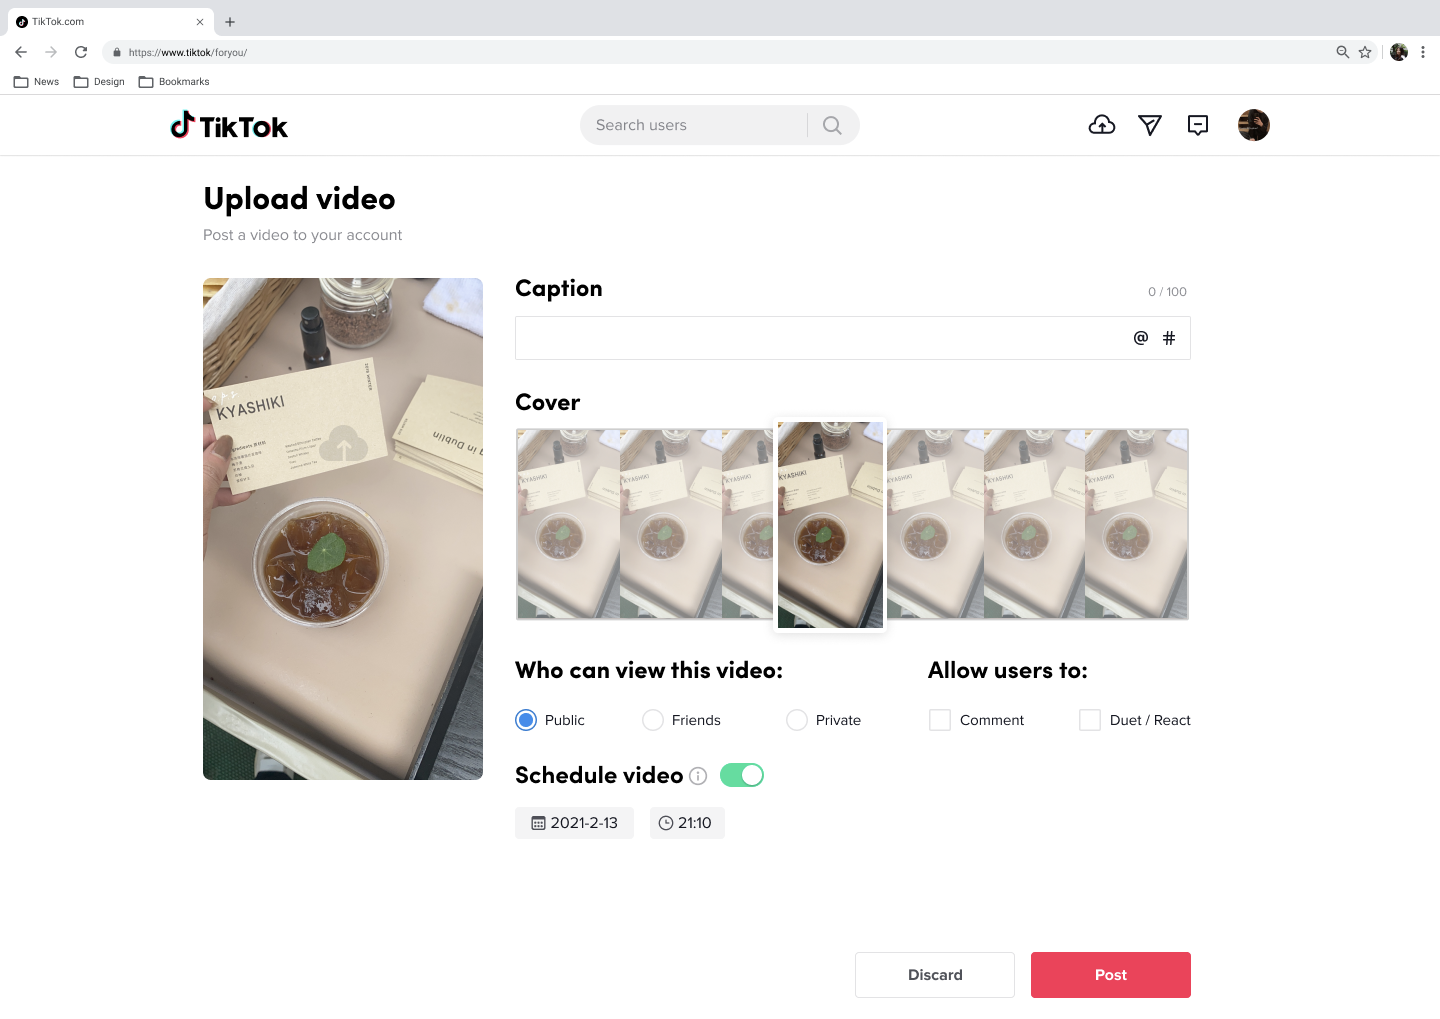 Video scheduler on TikTok: Edit and upload